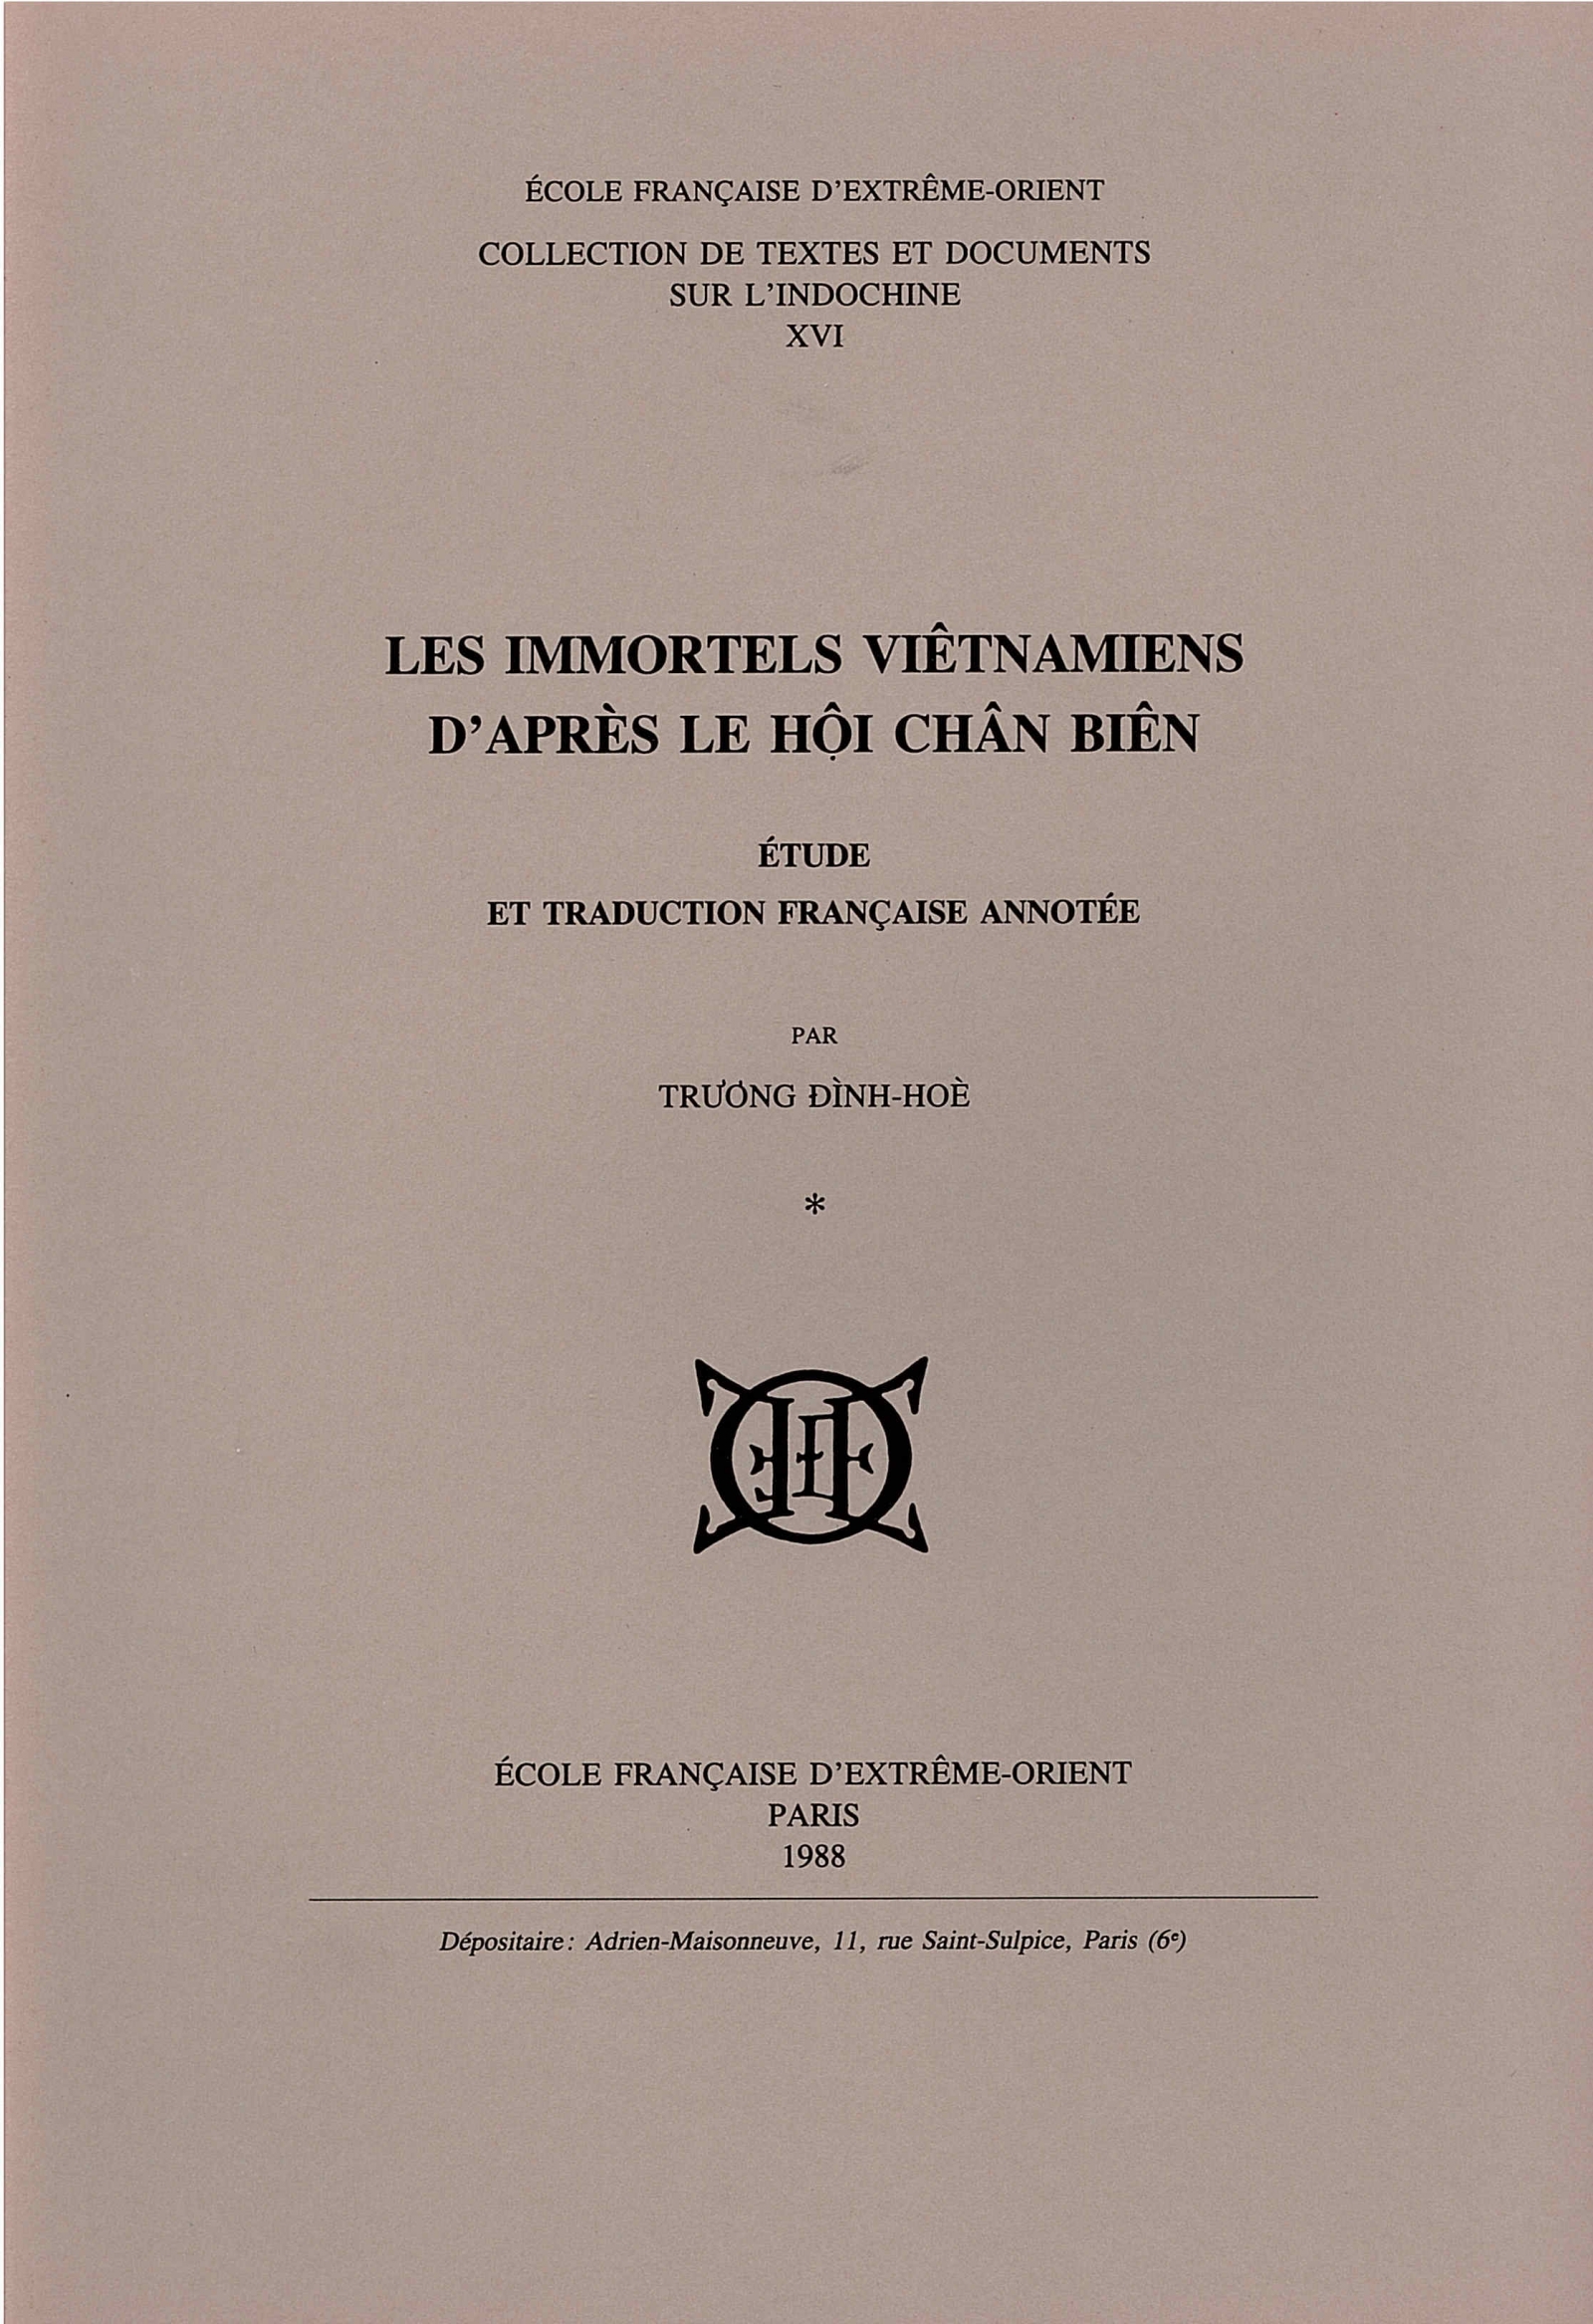 Les Immortels vietnamiens d'après le Hội chân biên